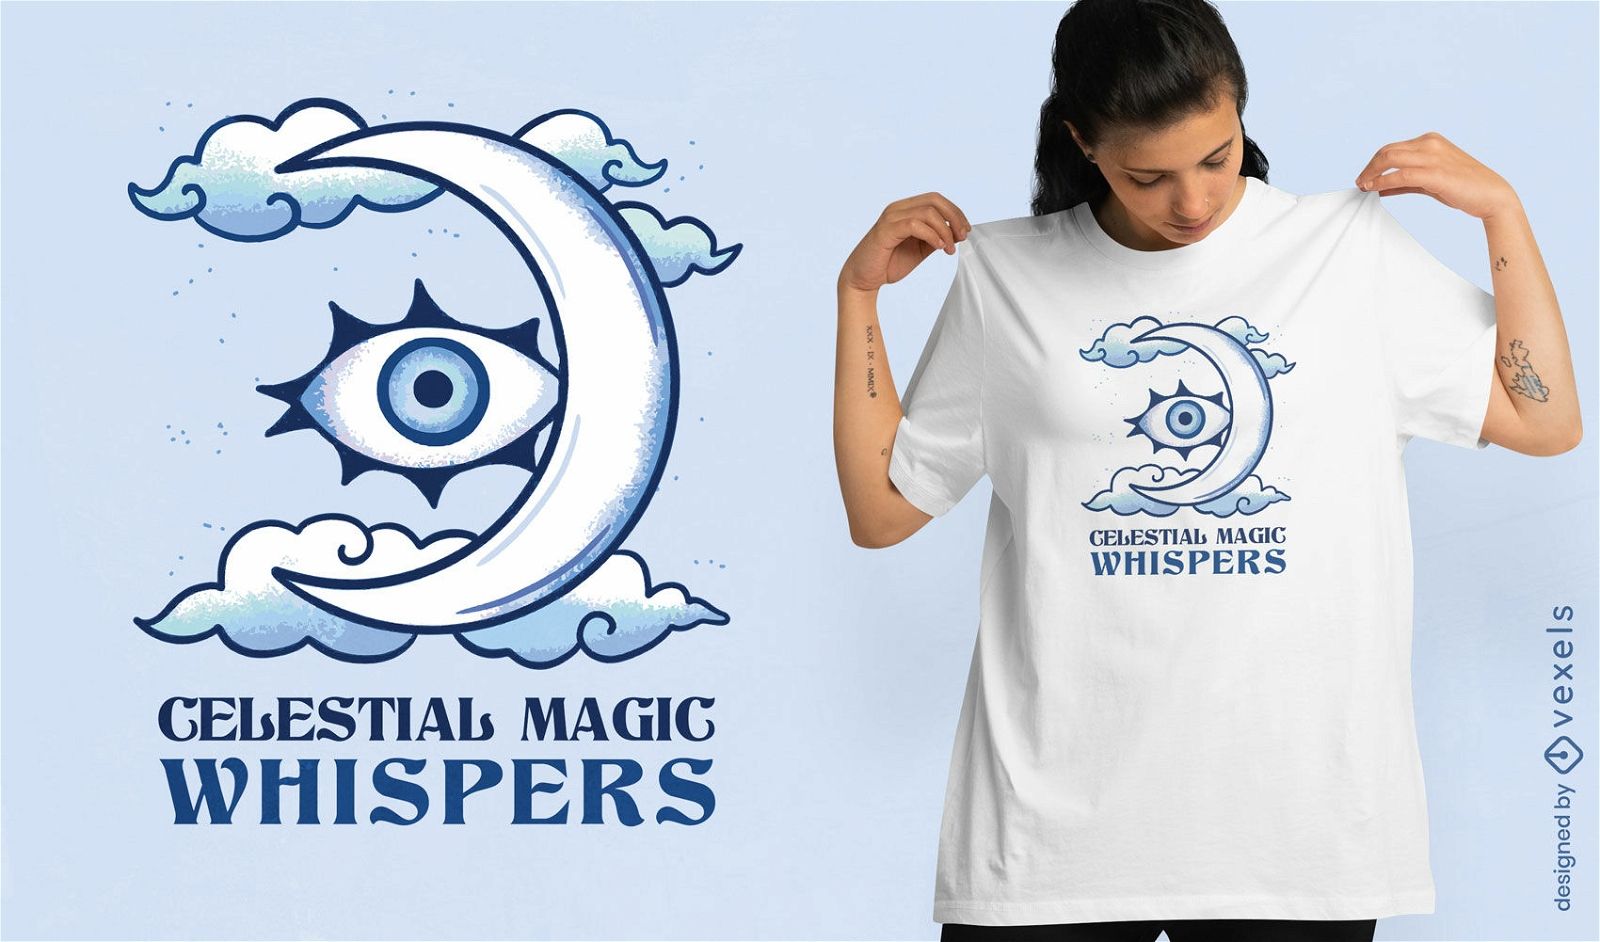 Design de camiseta com sussurros de magia celestial